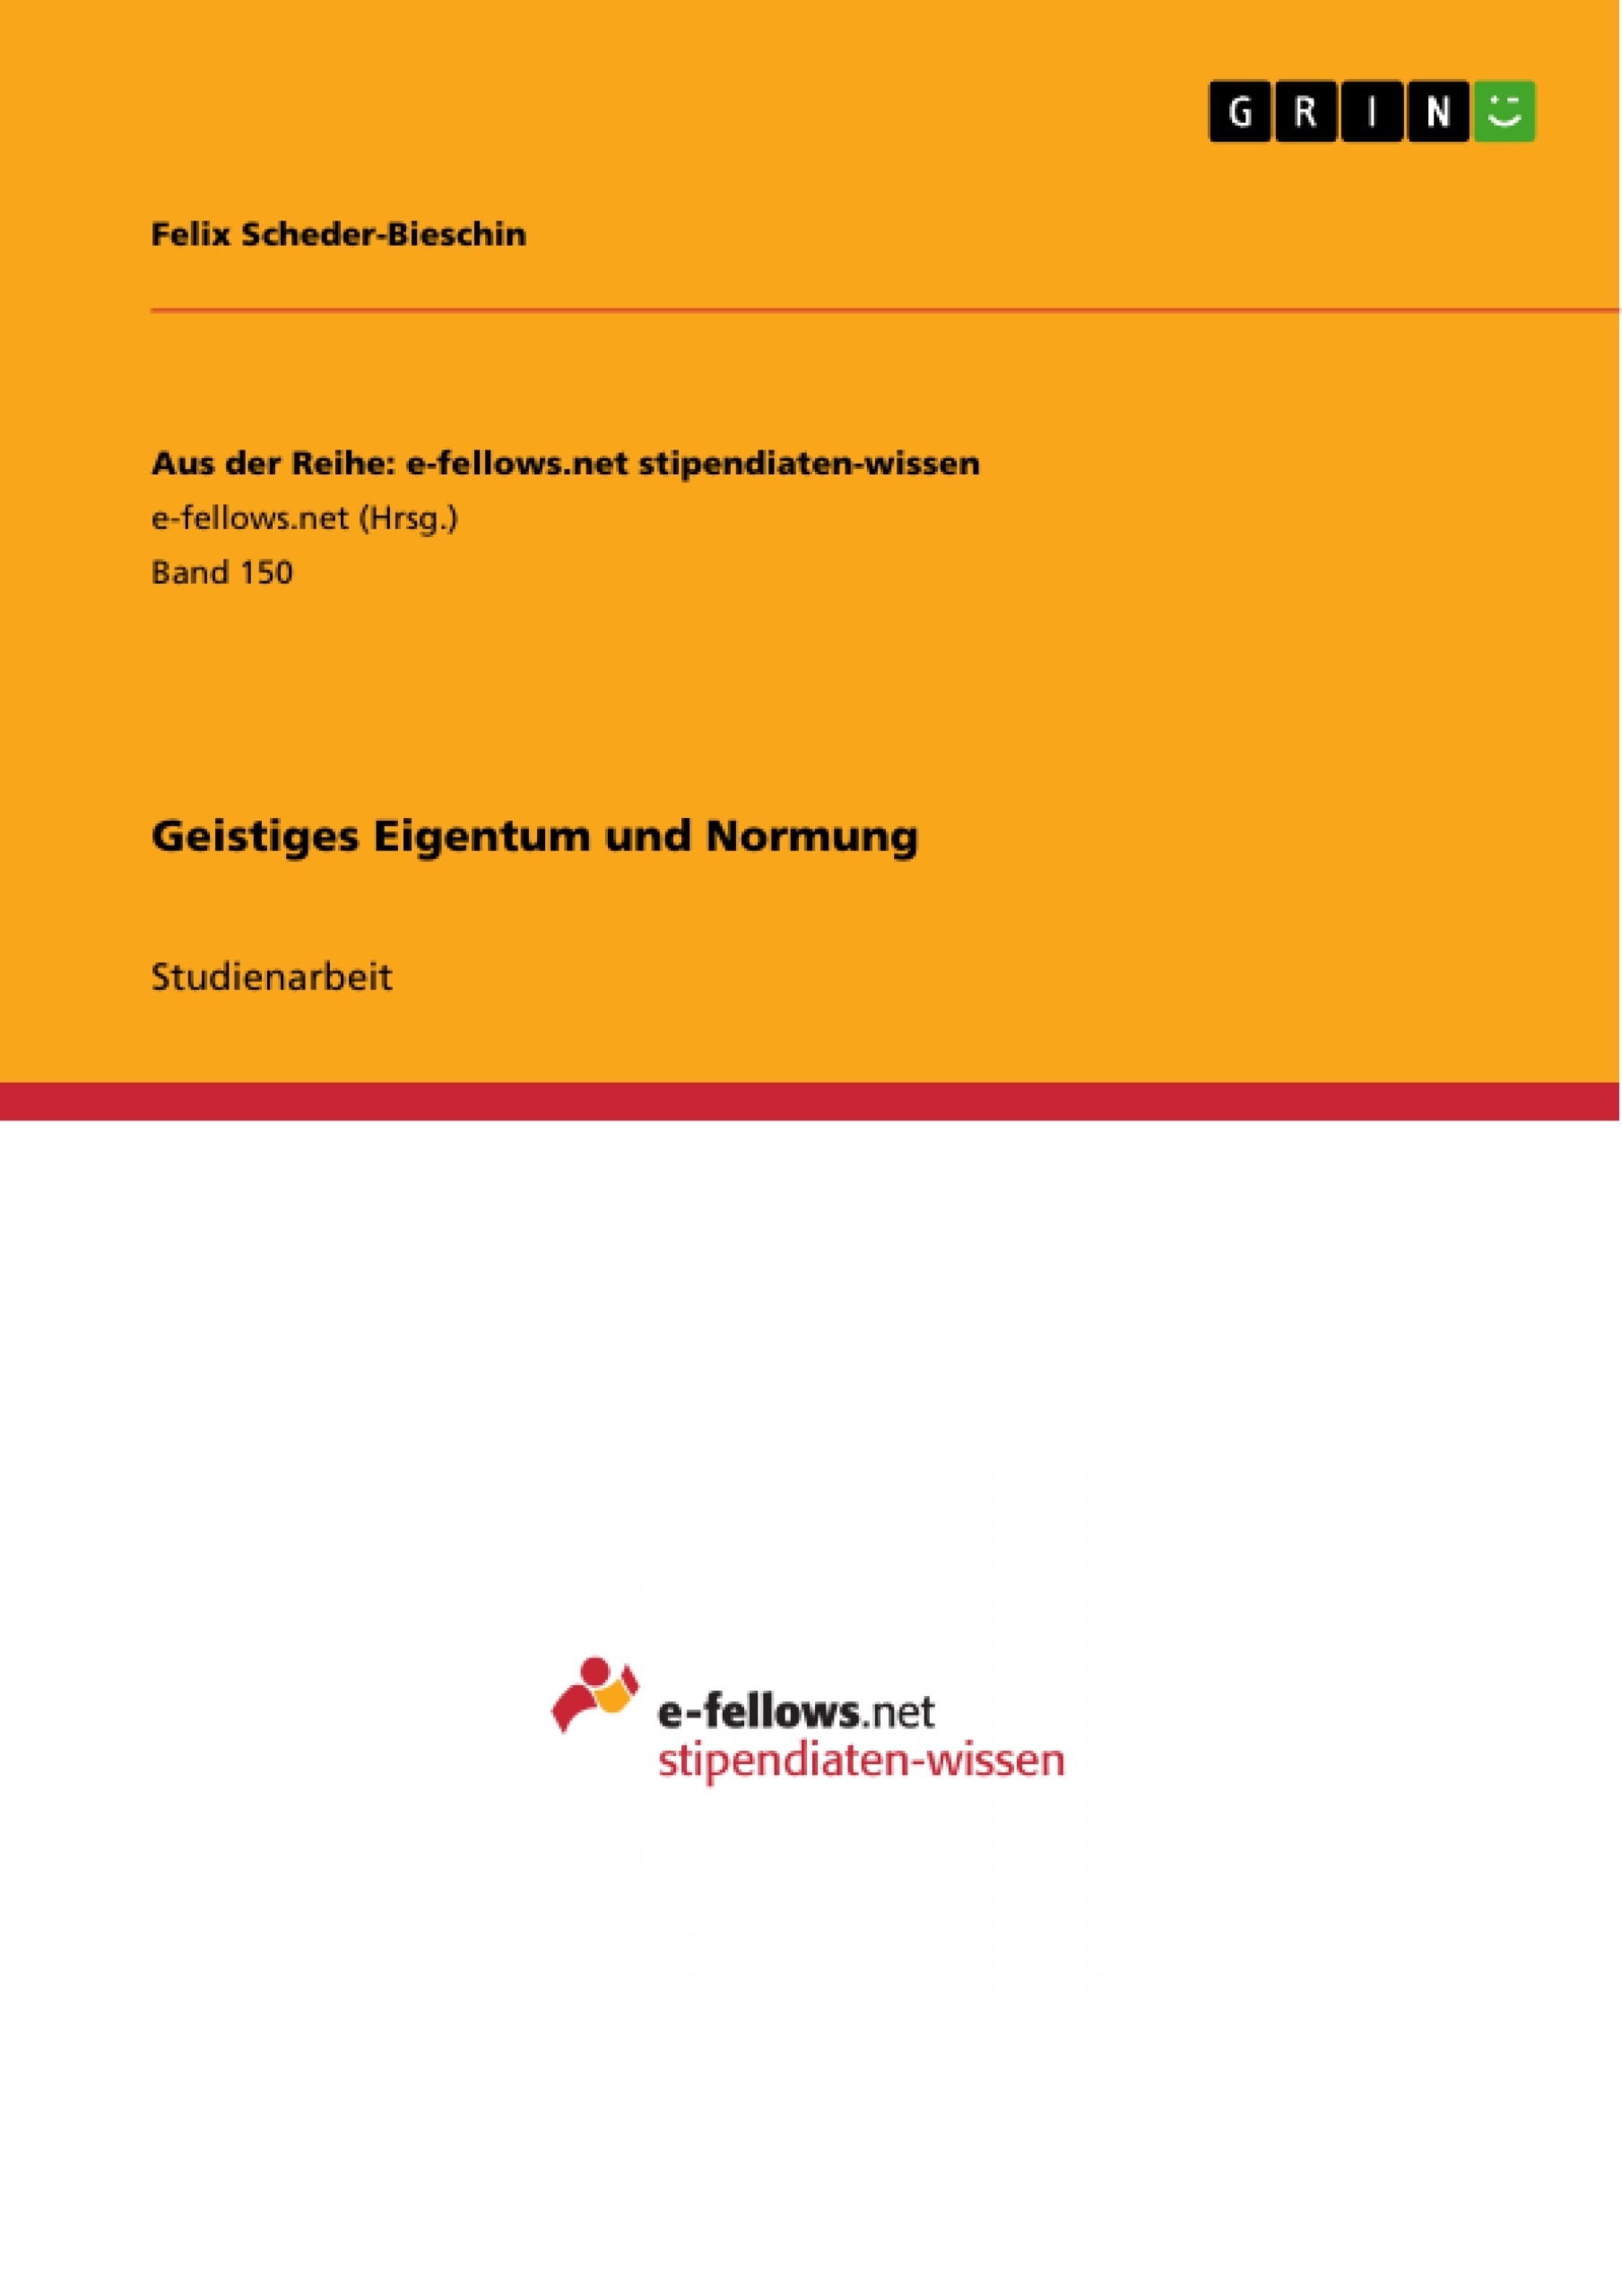 Title: Geistiges Eigentum und Normung